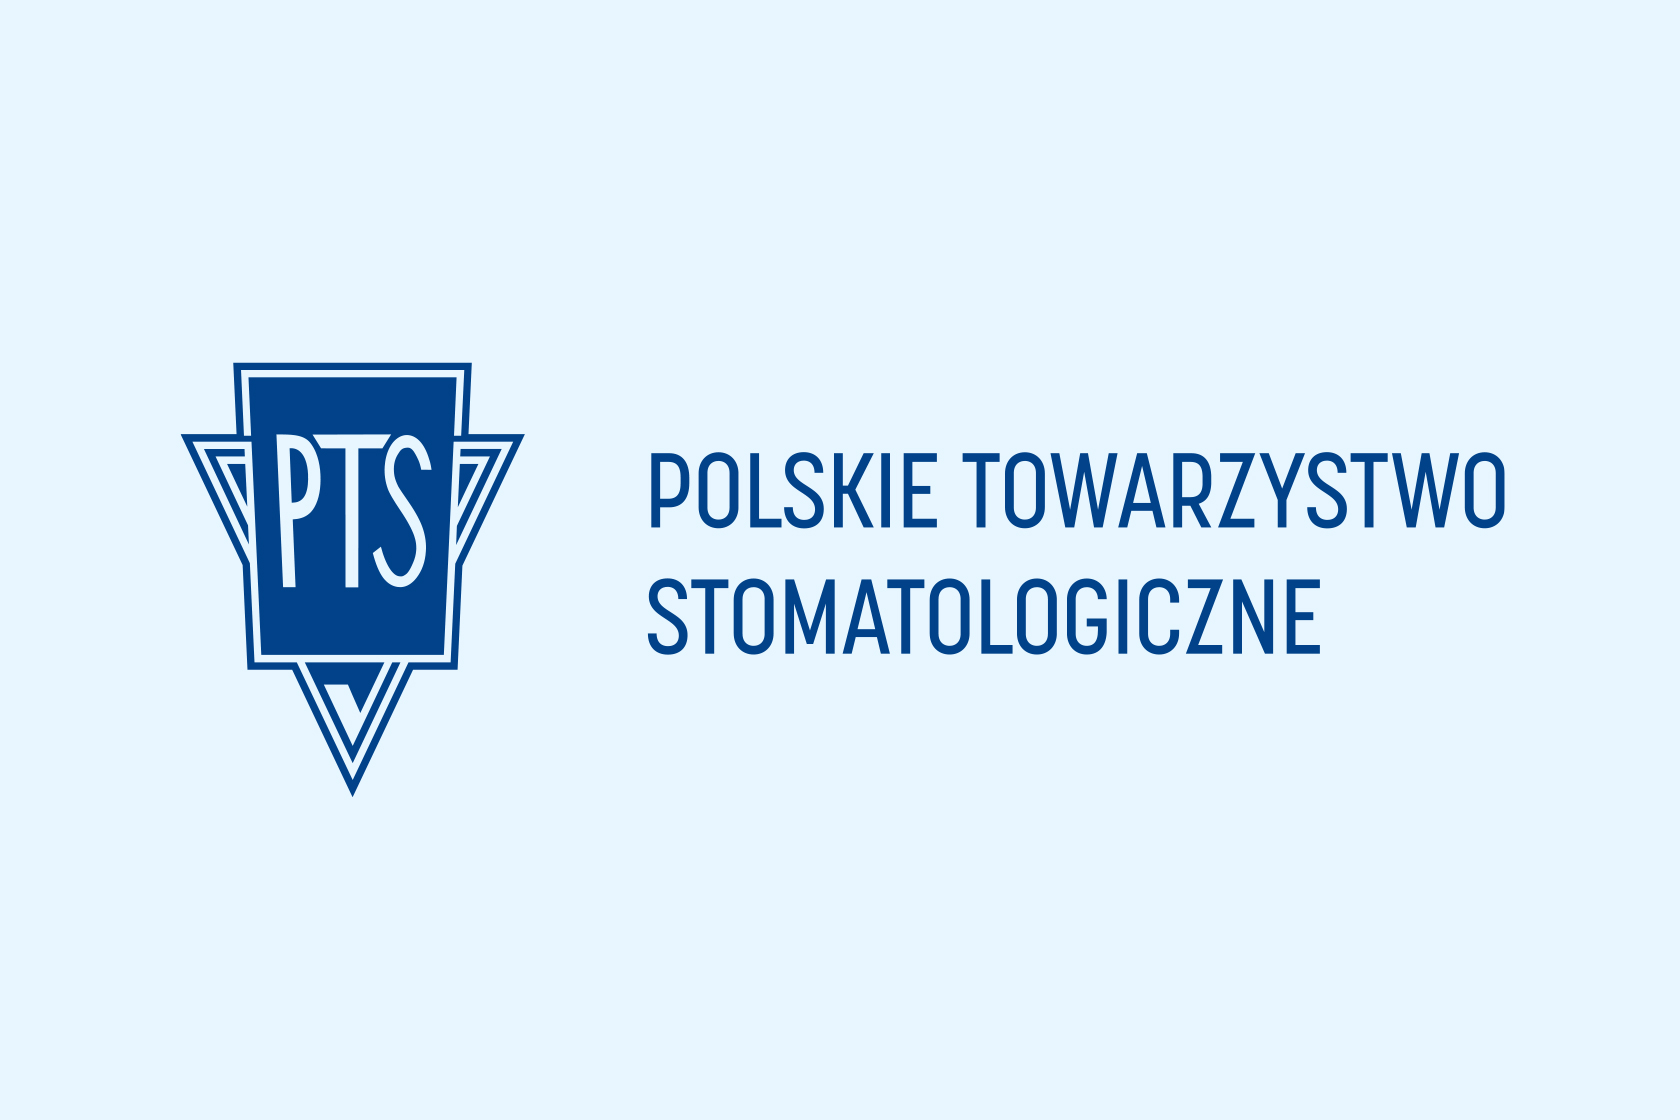 Czym jest Polskie Towarzystwo Stomatologiczne i jak funkcjonuje?